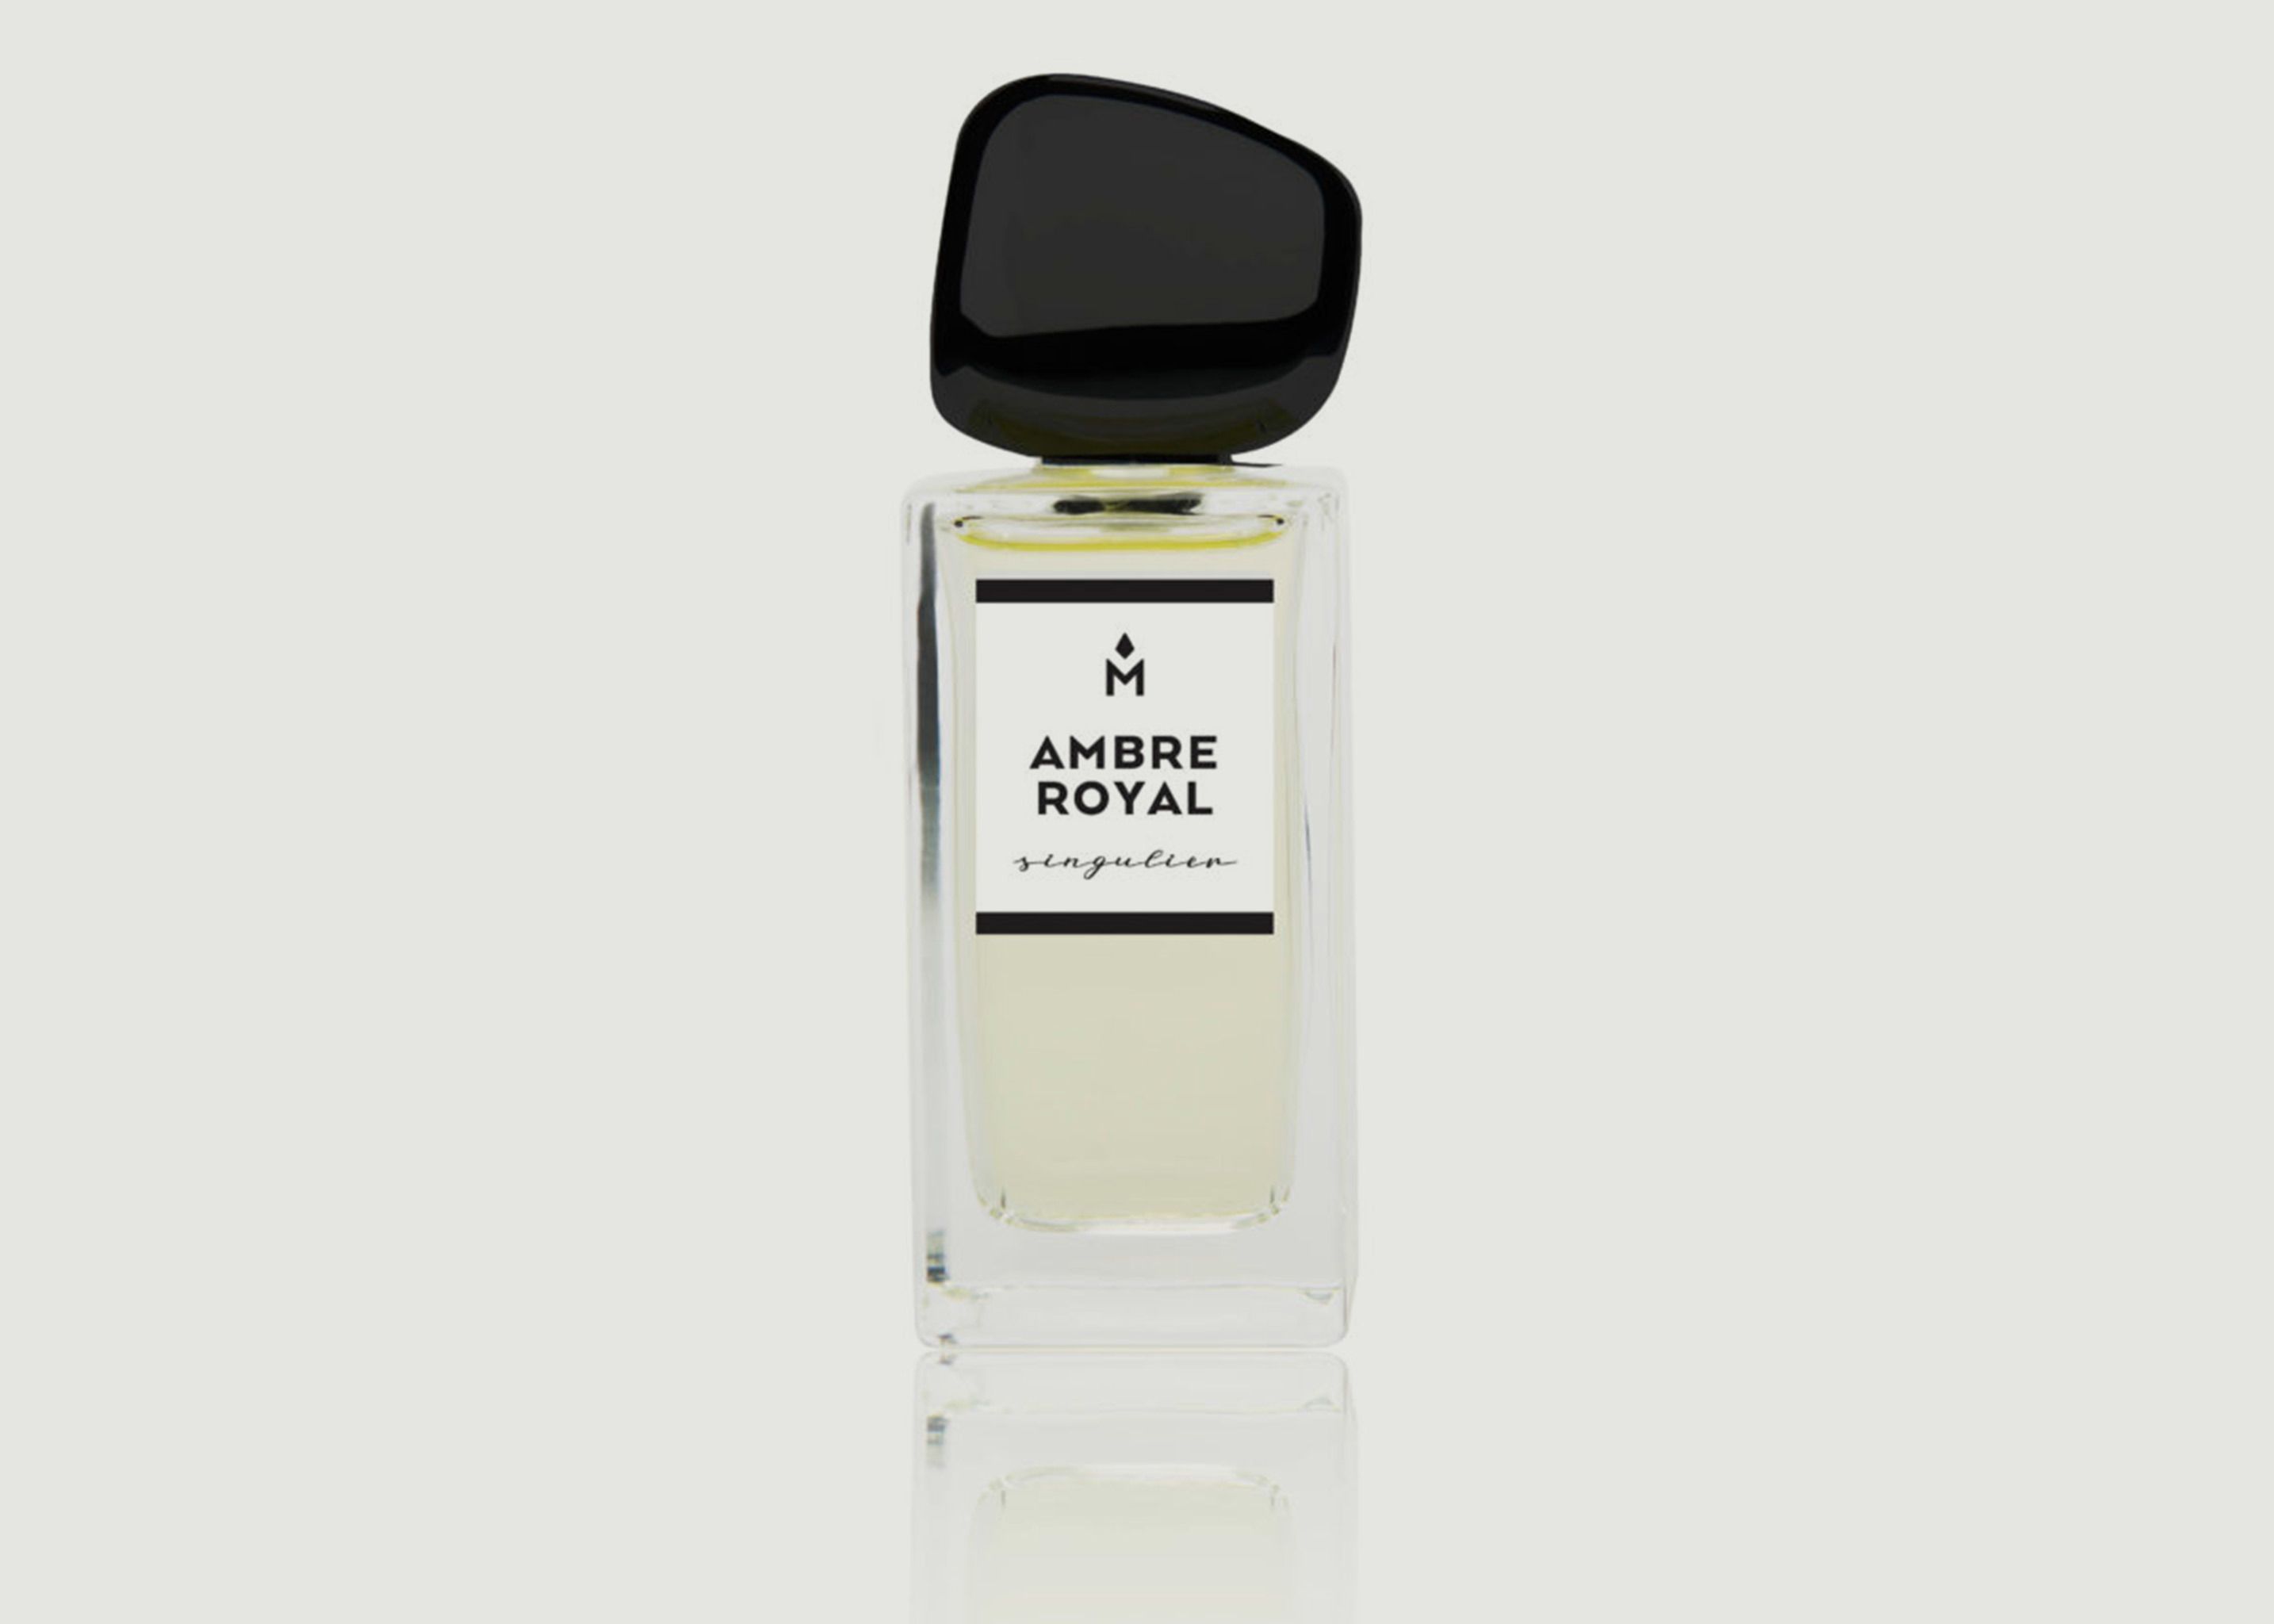 Ambre Royal 50ml Perfume - Ausmane Paris